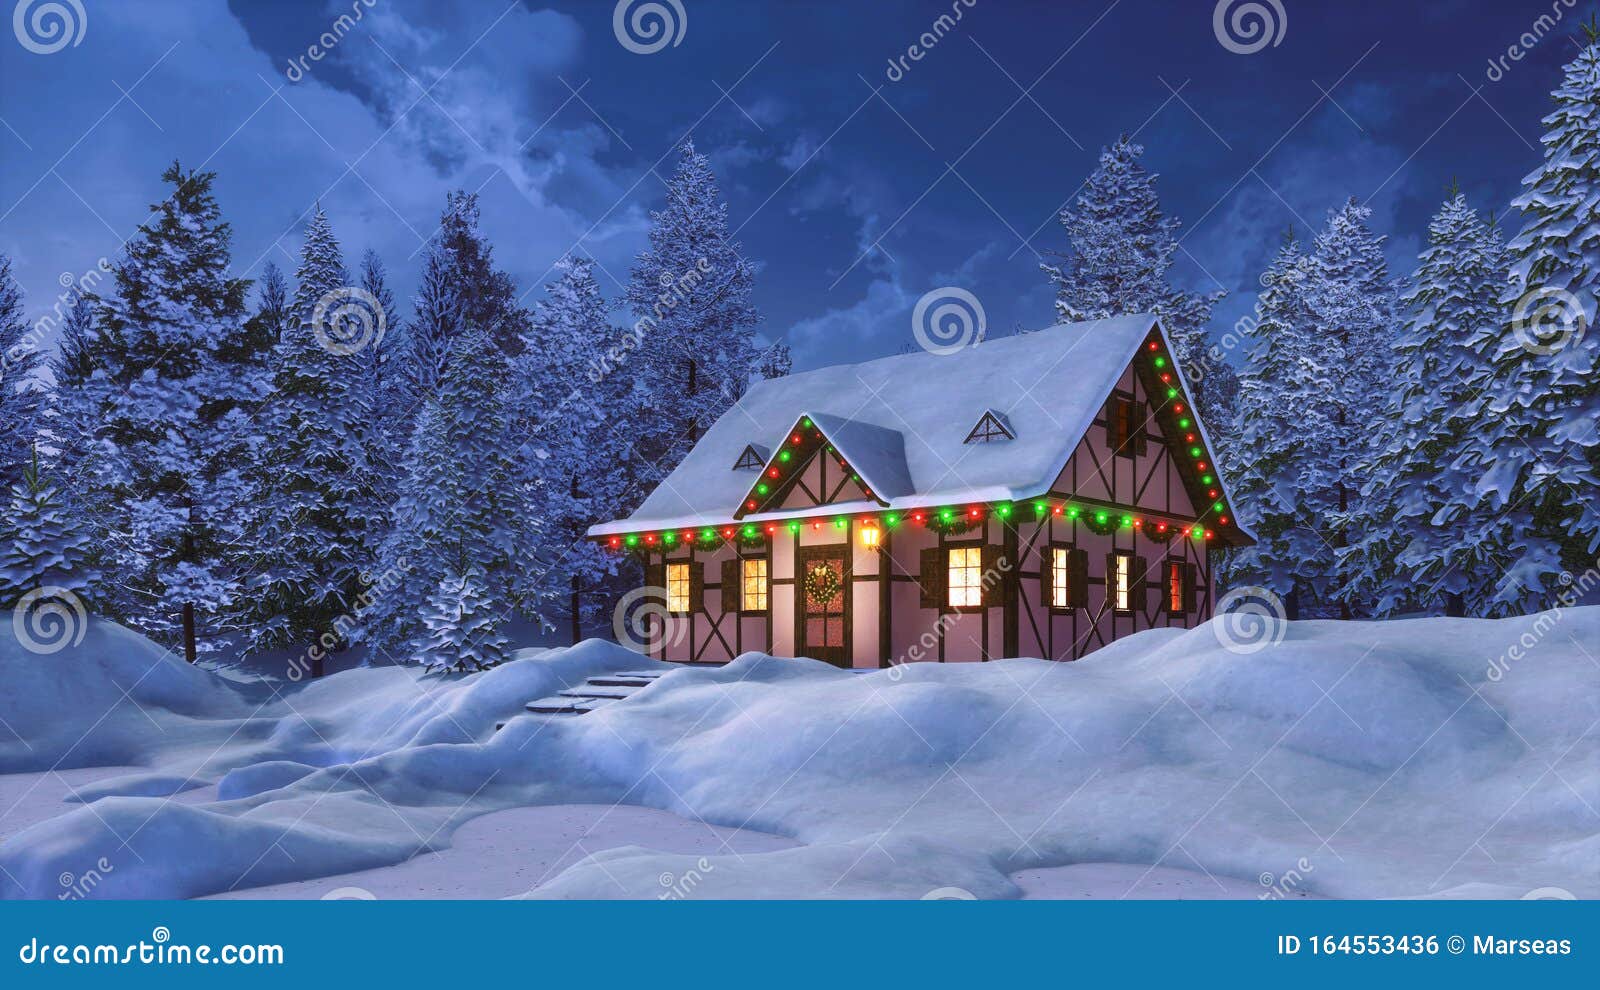 Casa De Nieve Decorada Para Navidad En La Noche De Invierno Stock de  ilustración - Ilustración de campo, soledad: 164553436